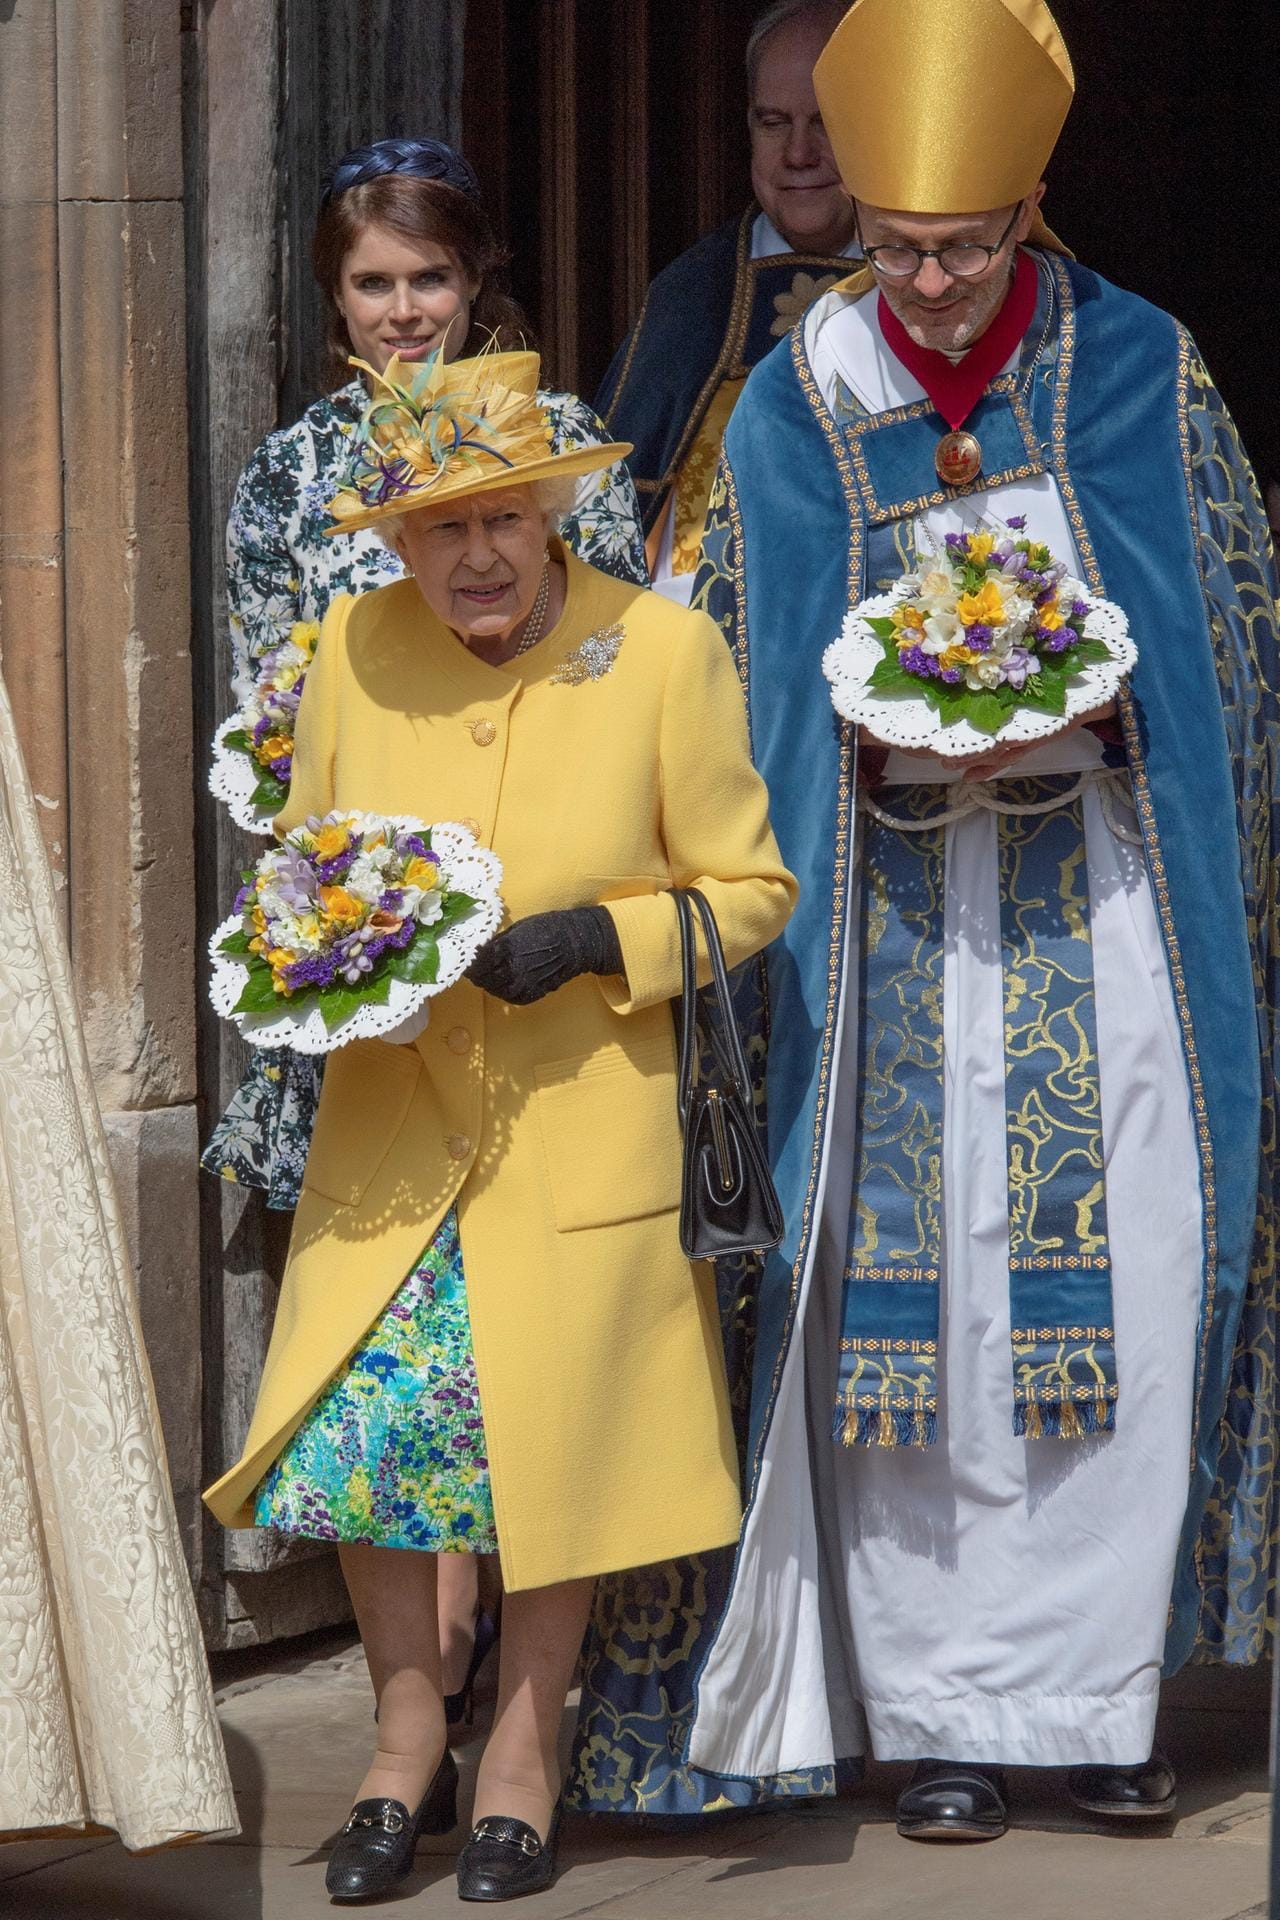 Seit über 60 Jahren verteilt die britische Monarchin vor Ostern das sogenannte "Maundy Money".